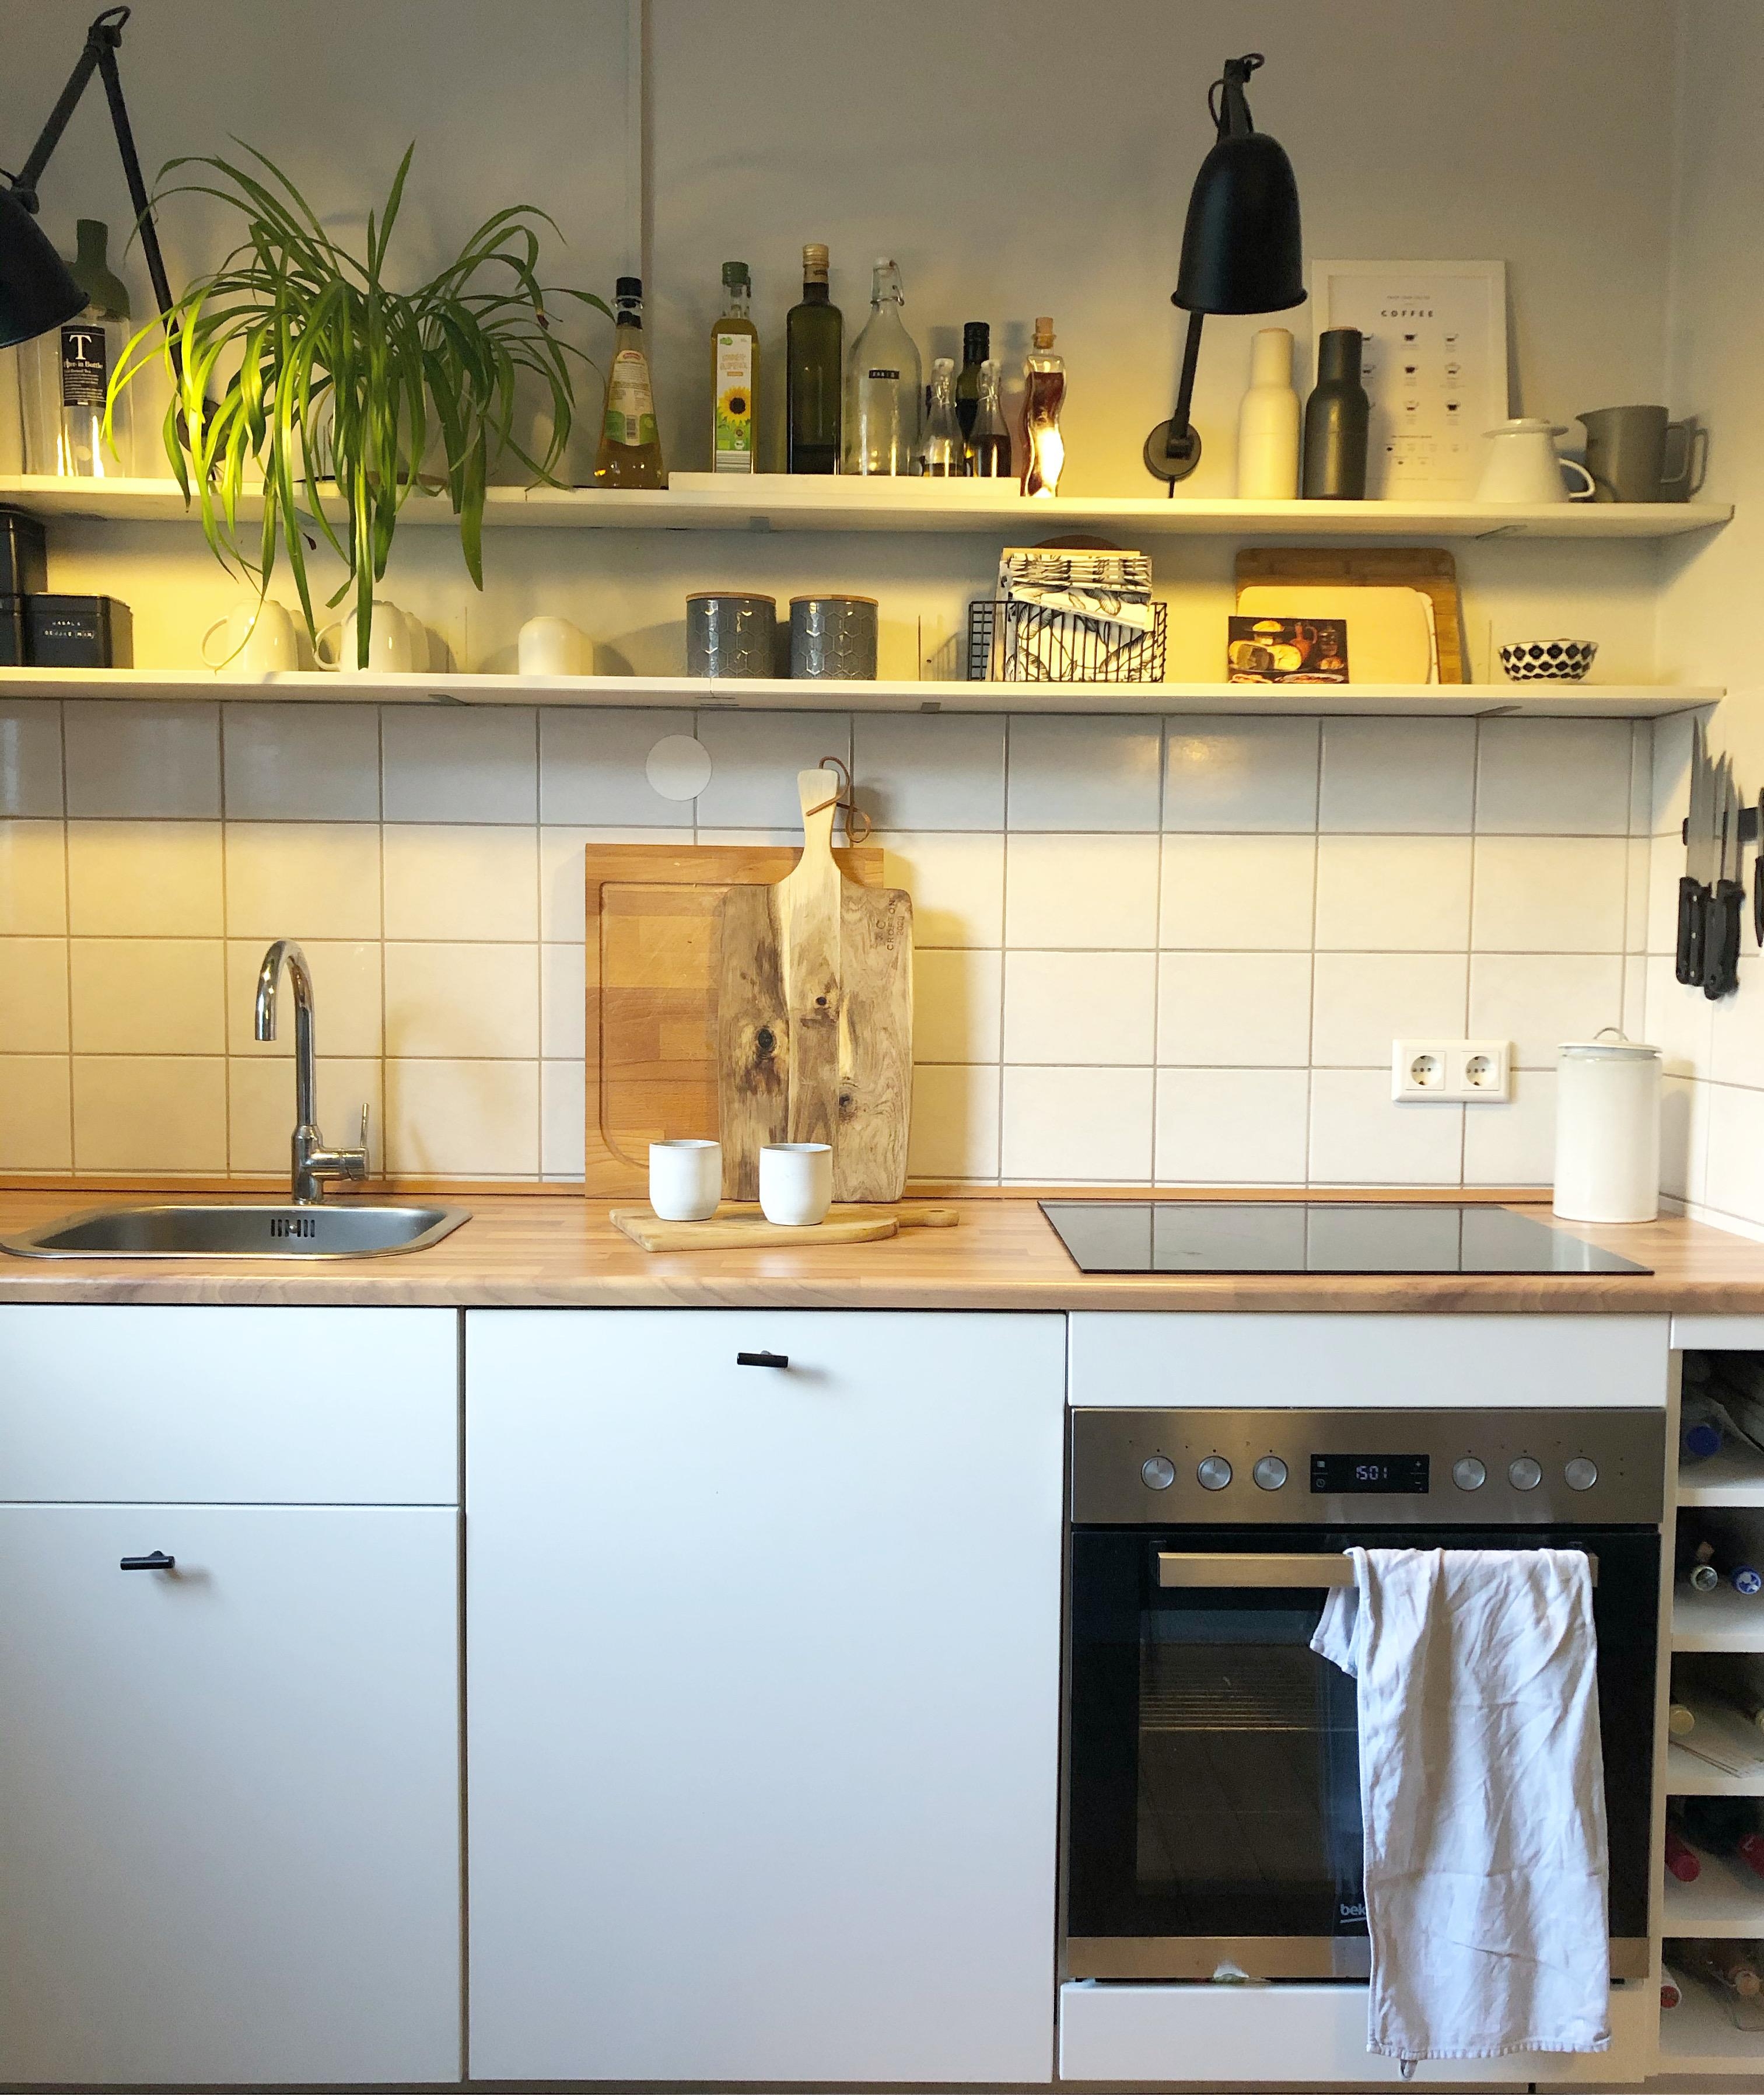 Küchenliebe! #küche #küchenliebe #kitchen #skandi #ikeaküche 